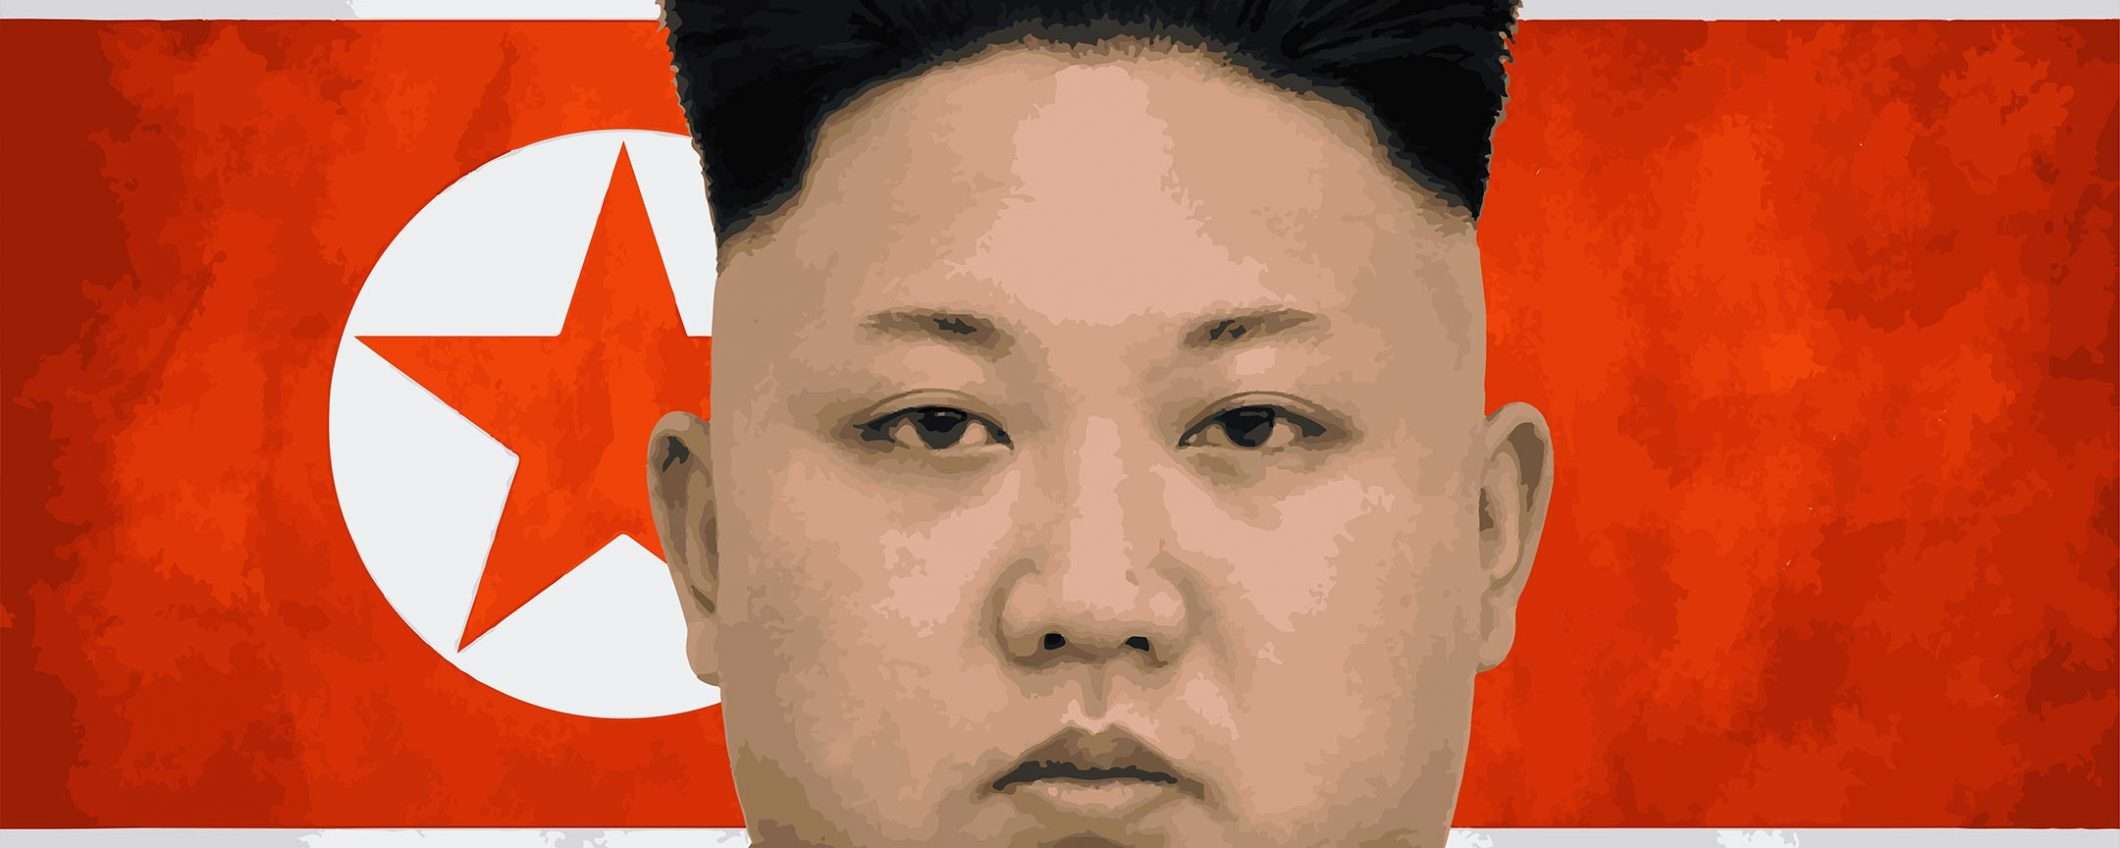 Un eBook per il regime nordcoreano di Kim jong-un